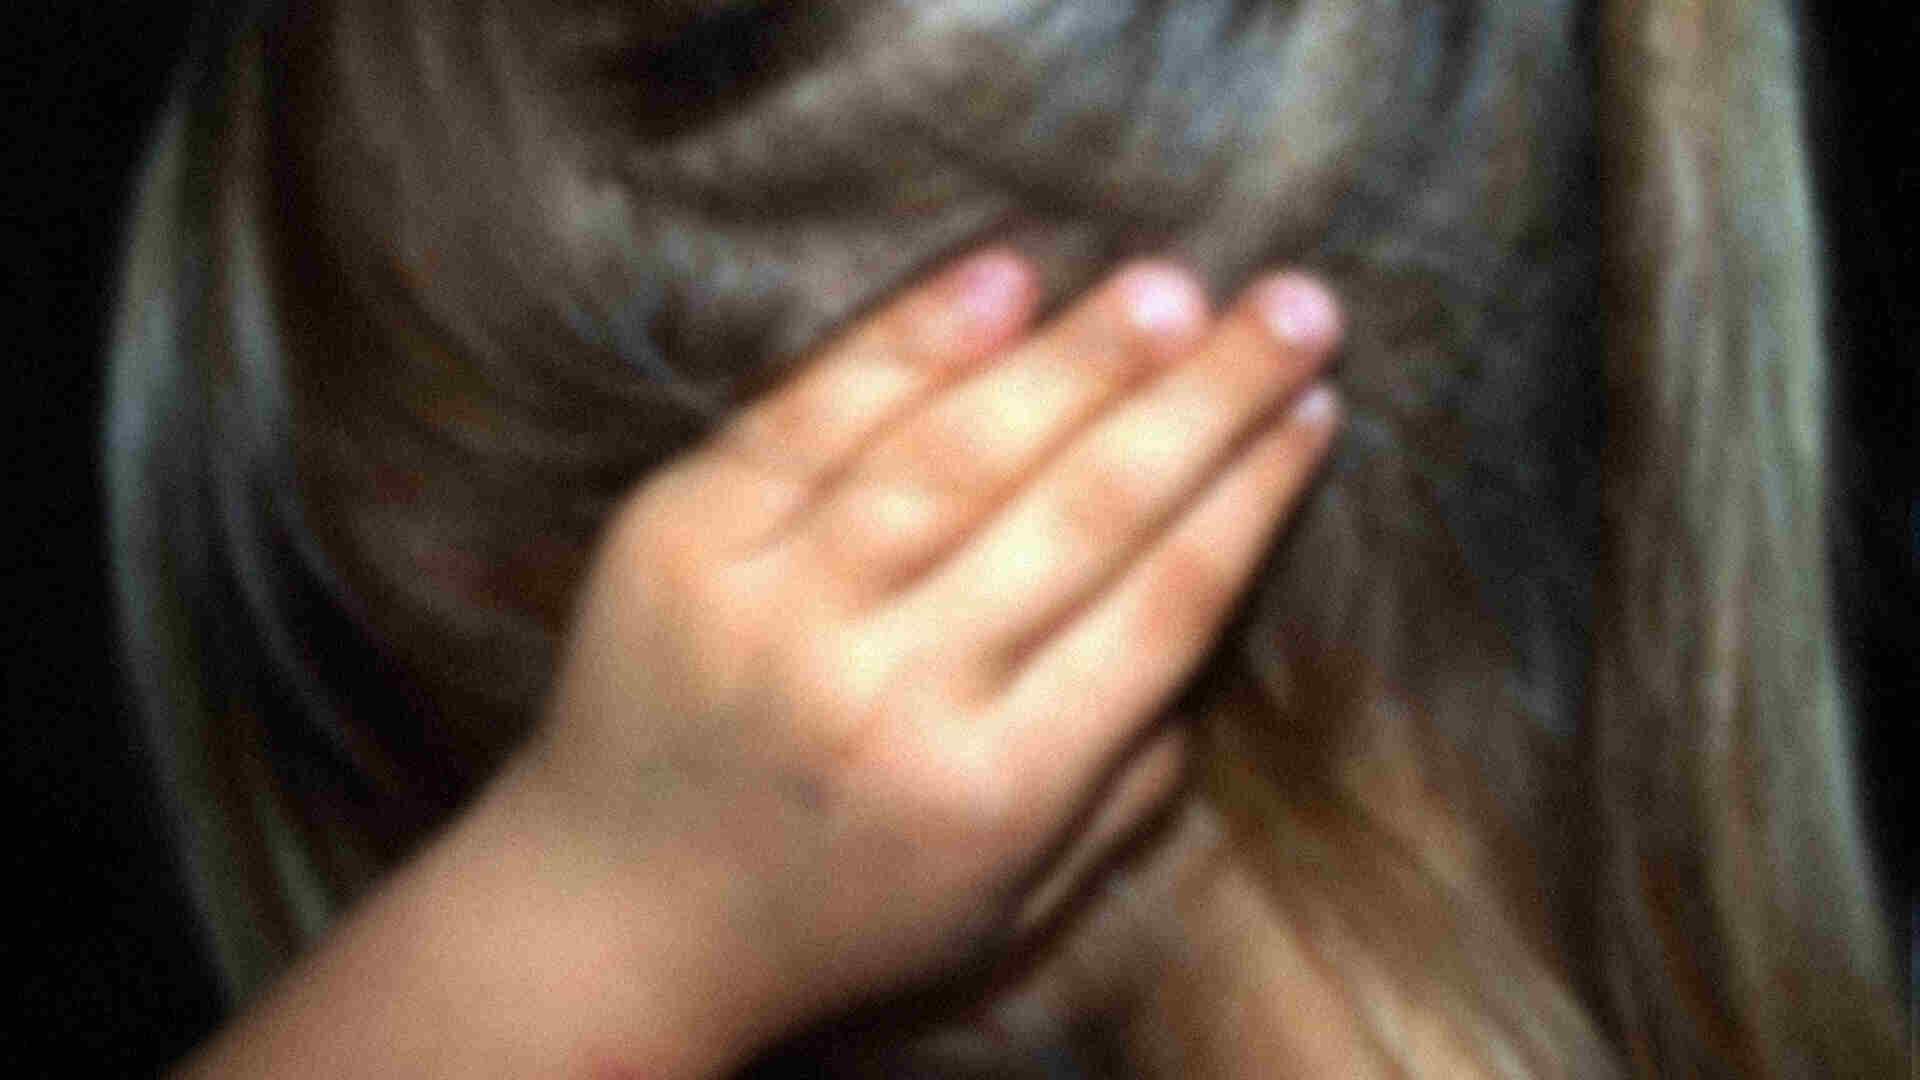 Suspeito de estuprar aluna de 6 anos será afastado de Emei durante apuração, diz Semed